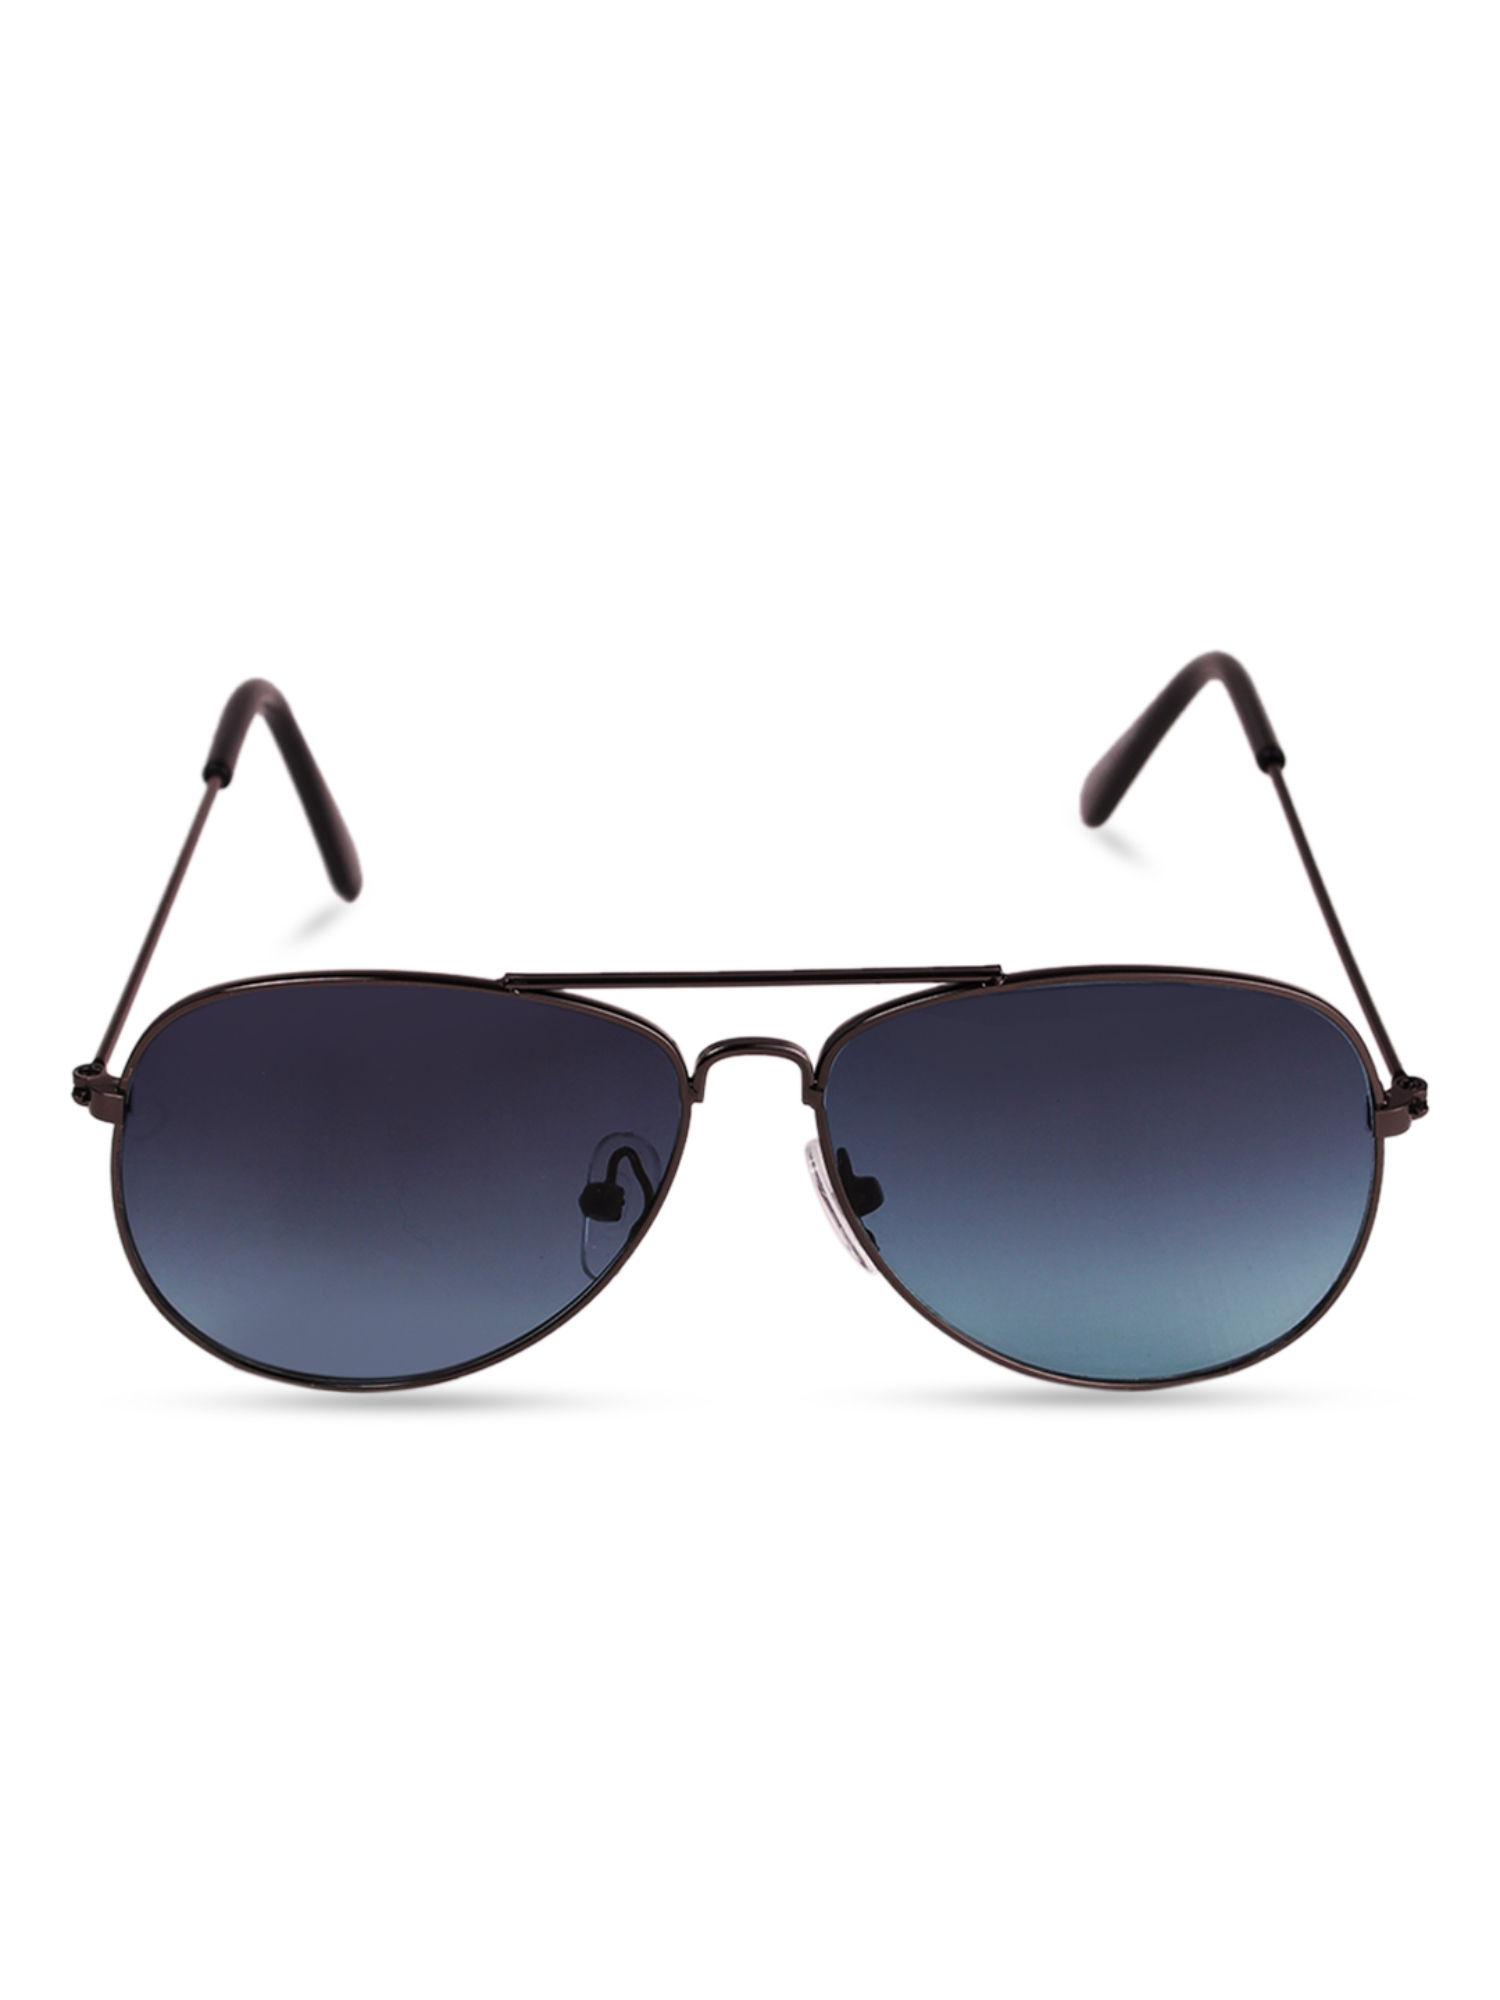 black frame blue lens aviator sunglasses (m)